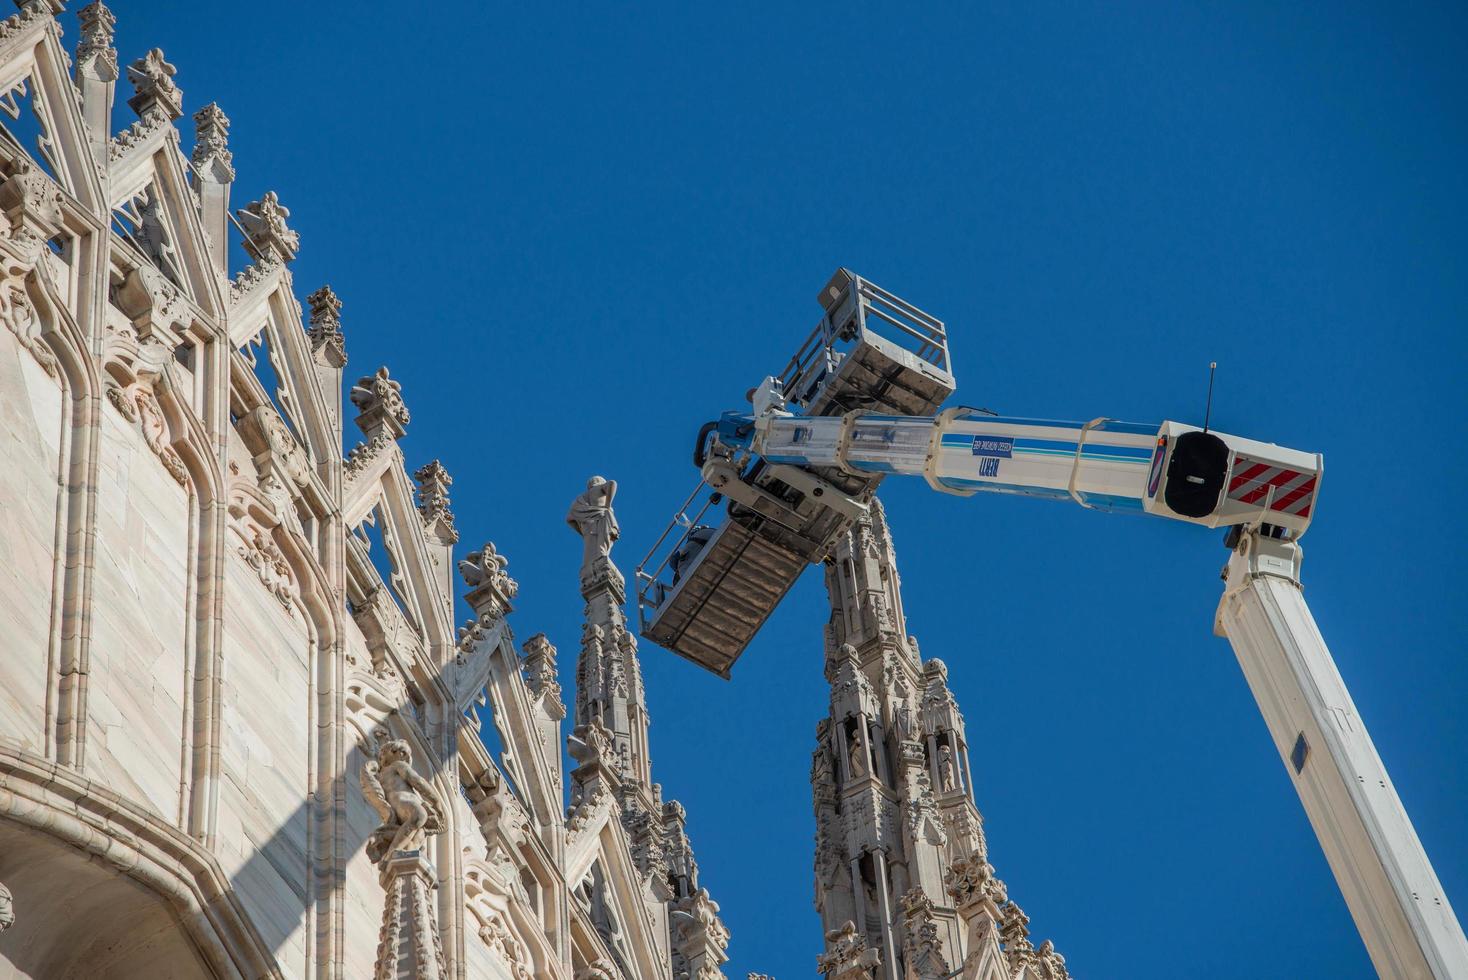 Milán Italia 2021 técnicos en plataforma elevadora para plan de mantenimiento programado y estudio de los fenómenos de degradación de la catedral de Milán foto